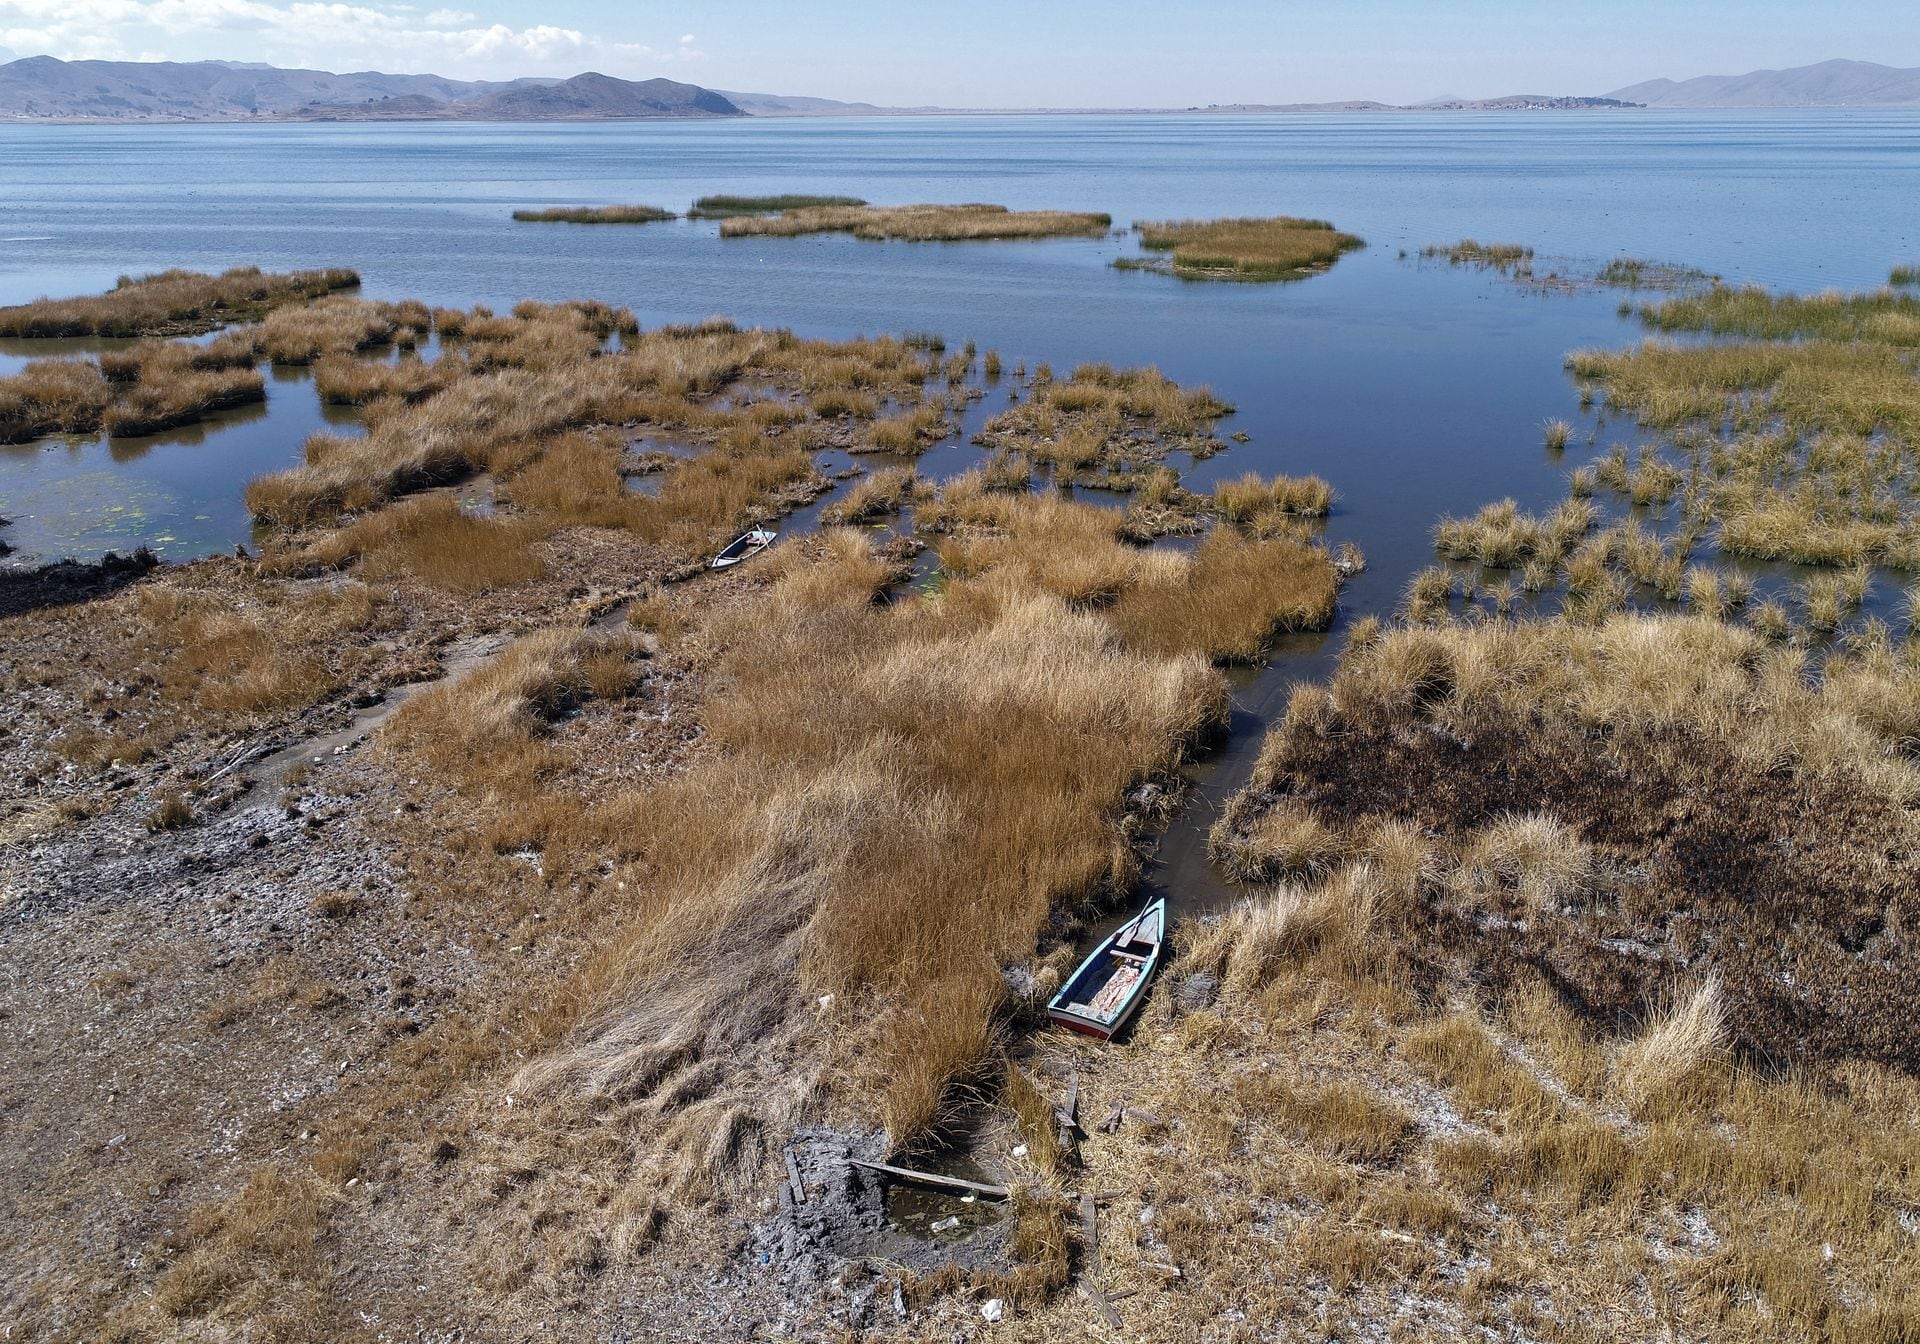 El nivel del agua del lago Titicaca , a 3.807 metros</p>
<p><h2>Objetivos de Desarrollo Sostenible (ODS) relacionados con el artículo:</h2>
</p>
<ul>
<li>ODS 7: Energía asequible y no contaminante</li>
<li>ODS 13: Acción por el clima</li>
</ul>
<p><h2>Metas específicas de los ODS identificadas en el artículo:</h2>
</p>
<ul>
<li>Meta 7.2: Aumentar la proporción de energía renovable en el mix energético global</li>
<li>Meta 13.1: Fortalecer la resiliencia y la capacidad de adaptación a los riesgos relacionados con el clima y los desastres naturales</li>
<li>Meta 13.3: Mejorar la educación, la sensibilización y la capacidad humana e institucional respecto de la mitigación del cambio climático, la adaptación a él, la reducción de sus efectos y la alerta temprana</li>
</ul>
<p><h2>Indicadores de los ODS mencionados en el artículo:</h2>
</p>
<ul>
<li>Indicador 7.2.1: Proporción de energía renovable en el consumo final de energía</li>
<li>Indicador 13.1.1: Número total de muertes, desapariciones, personas heridas o afectadas como resultado de desastres naturales por cada 100,000 habitantes</li>
<li>Indicador 13.3.1: Número de países que han integrado medidas de mitigación y adaptación al cambio climático en sus políticas, estrategias y planes nacionales</li>
</ul>
<p><h2>Tabla de ODS, metas e indicadores:</h2>
</p>
<table>
<tr>
<p><th>ODS</th>
</p>
<p><th>Metas</th>
</p>
<p><th>Indicadores</th>
</p>
</tr>
<tr>
<p><td>ODS 7: Energía asequible y no contaminante</td>
</p>
<p><td>Meta 7.2: Aumentar la proporción de energía renovable en el mix energético global</td>
</p>
<p><td>Indicador 7.2.1: Proporción de energía renovable en el consumo final de energía</td>
</p>
</tr>
<tr>
<p><td>ODS 13: Acción por el clima</td>
</p>
<p><td>Meta 13.1: Fortalecer la resiliencia y la capacidad de adaptación a los riesgos relacionados con el clima y los desastres naturales</td>
</p>
<p><td>Indicador 13.1.1: Número total de muertes, desapariciones, personas heridas o afectadas como resultado de desastres naturales por cada 100,000 habitantes</td>
</p>
</tr>
<tr>
<p><td>ODS 13: Acción por el clima</td>
</p>
<p><td>Meta 13.3: Mejorar la educación, la sensibilización y la capacidad humana e institucional respecto de la mitigación del cambio climático, la adaptación a él, la reducción de sus efectos y la alerta temprana</td>
</p>
<p><td>Indicador 13.3.1: Número de países que han integrado medidas de mitigación y adaptación al cambio climático en sus políticas, estrategias y planes nacionales</td>
</p>
</tr>
</table>
<p><strong>¡Atención!</strong> Este espléndido artículo nace de la fuente del conocimiento, moldeado por una maravillosa tecnología patentada de inteligencia artificial que profundizó en un vasto océano de datos, iluminando el camino hacia los Objetivos de Desarrollo Sostenible. Recuerda que todos los derechos están reservados por SDG Investors LLC, lo que nos permite defender el progreso juntos.</p>
<p><strong>Fuente: <a href=